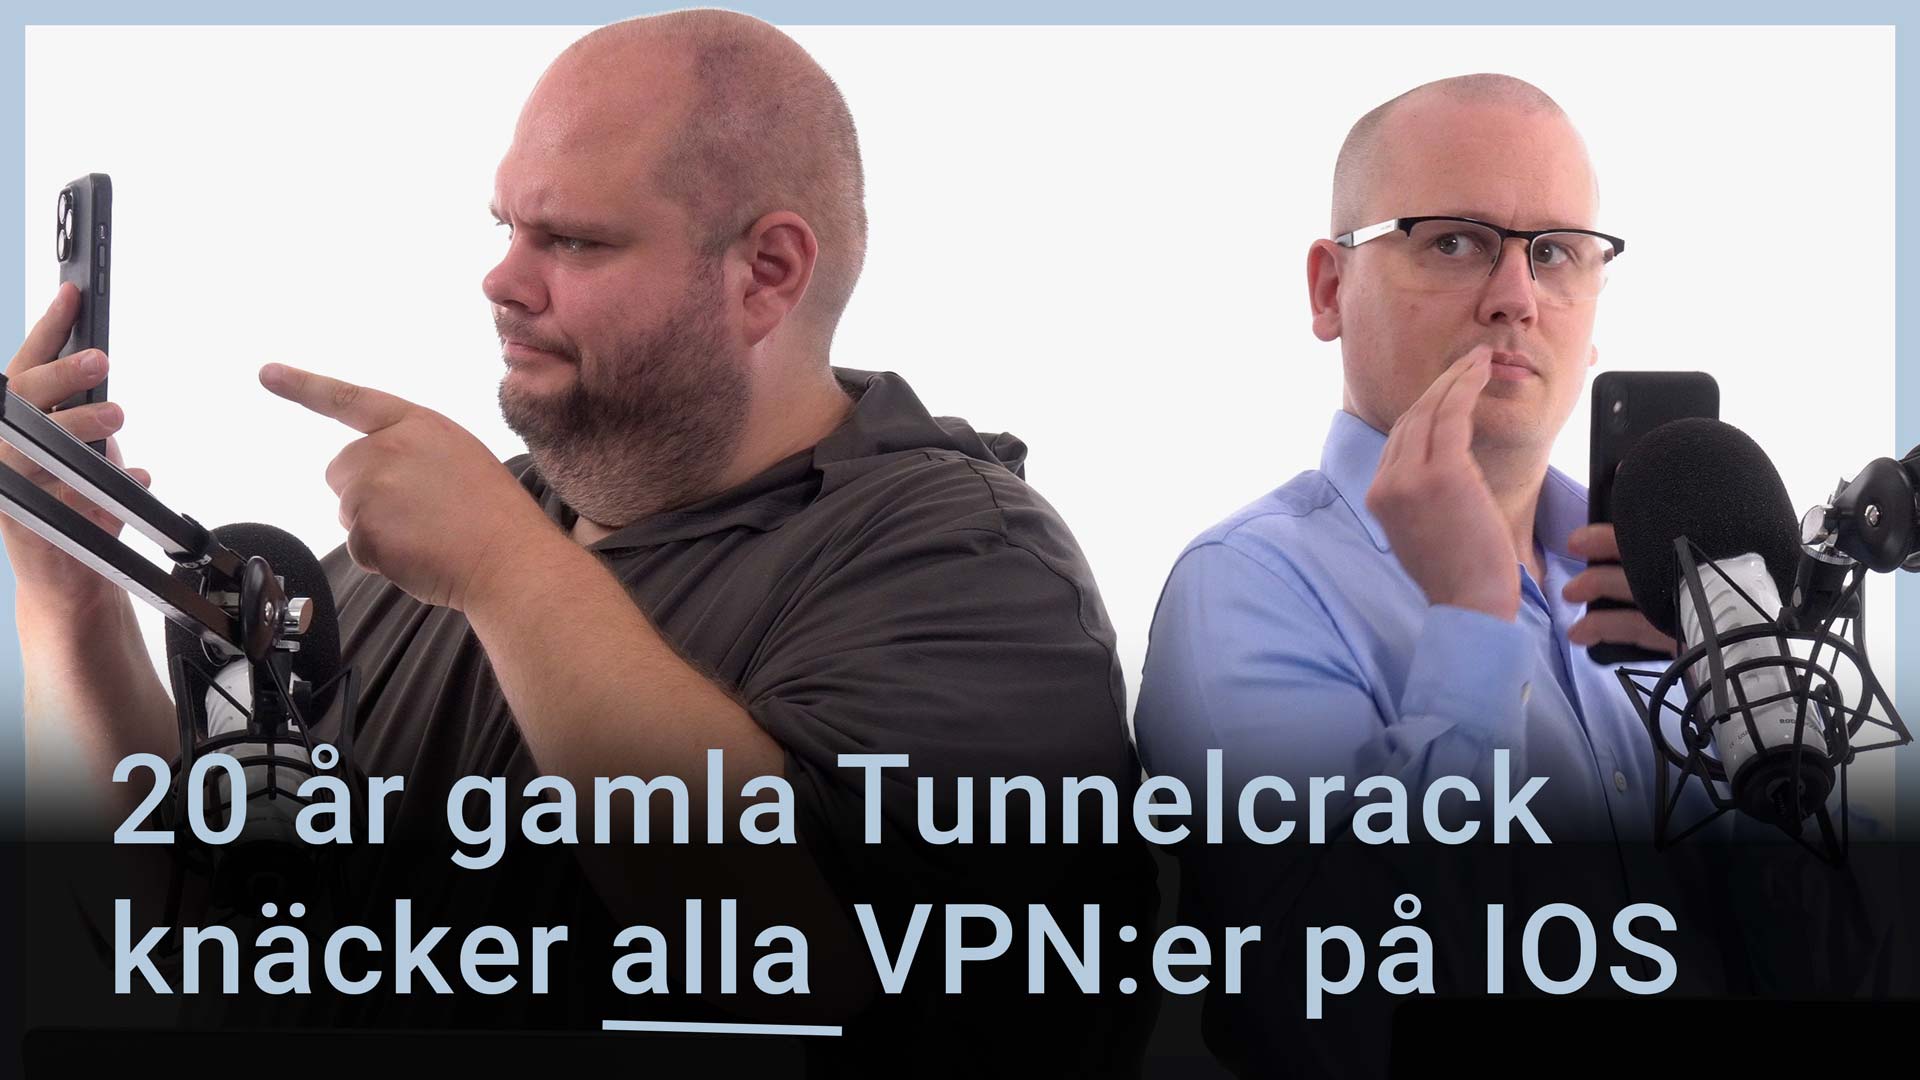 Peter Esse och Karl Emil Nikka står vid sina mikrofoner. En röd android syns i bakgrunden. Texten ”20 år gamla Tunnelcrack knäcker alla VPN:er på IOS” är stämplad ovanpå bilden.